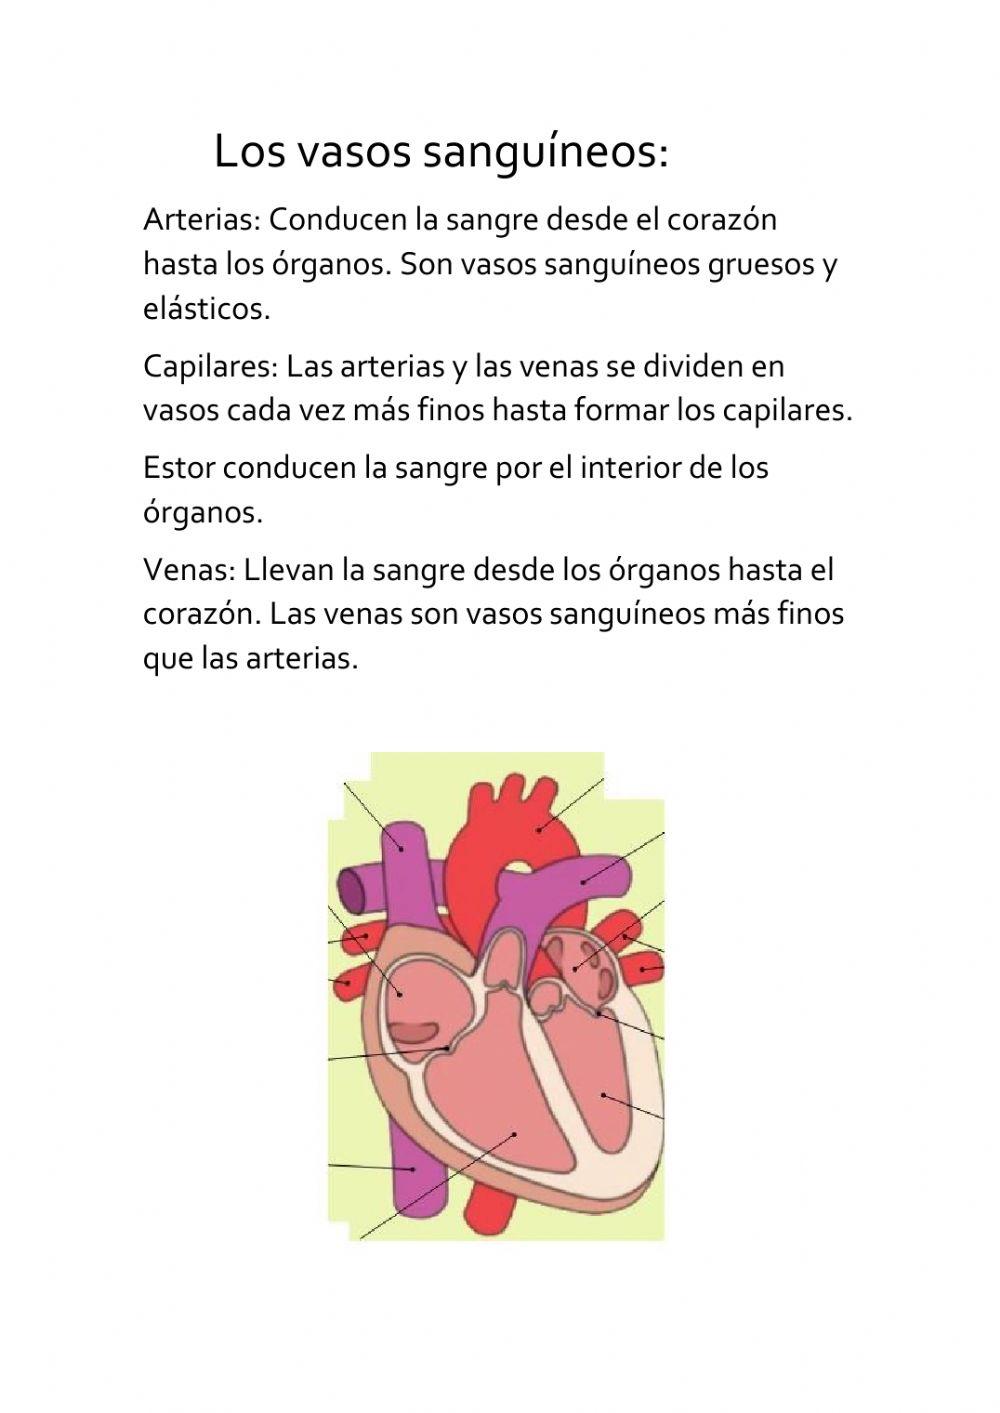 U5 El corazón y teoría de los vasos sanguíneos.